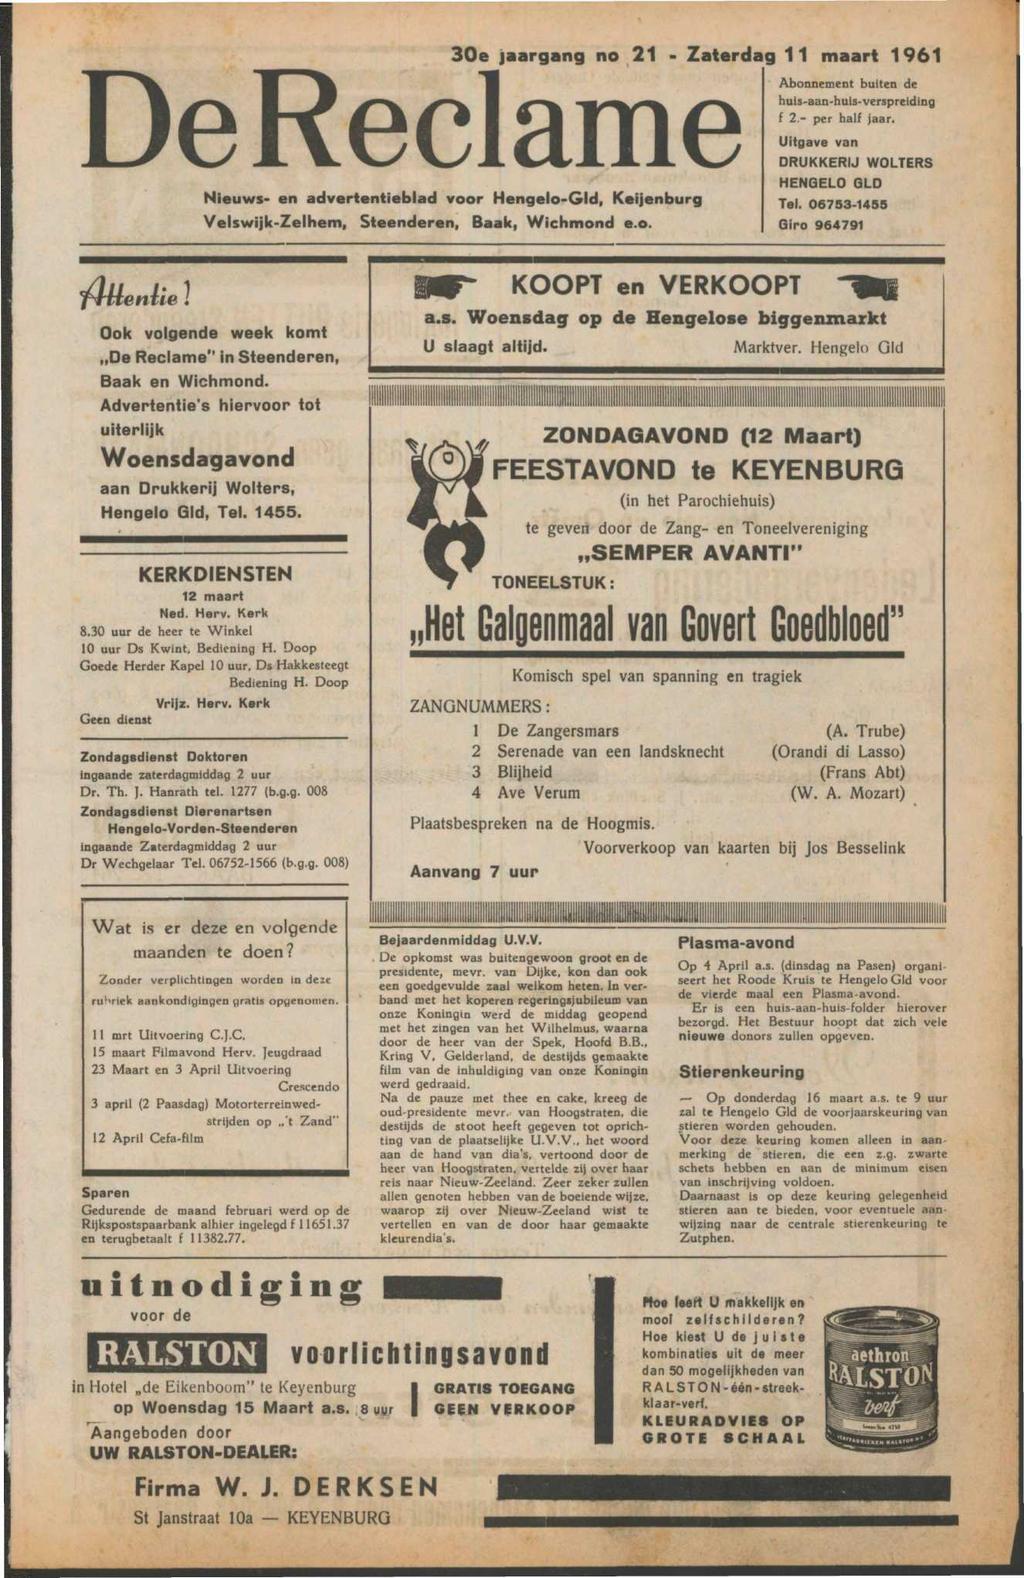 De Reclame Nieuws- en advertentieblad voor Hengelo-Gld, Keijenburg Velswijk-Zelhem, Steenderen, Baak, Wichmond e.o. 30e jaargang no 21 - Zaterdag 11 maart 1961 Abonnement buiten de huis-aan-huis-verspreiding f 2.